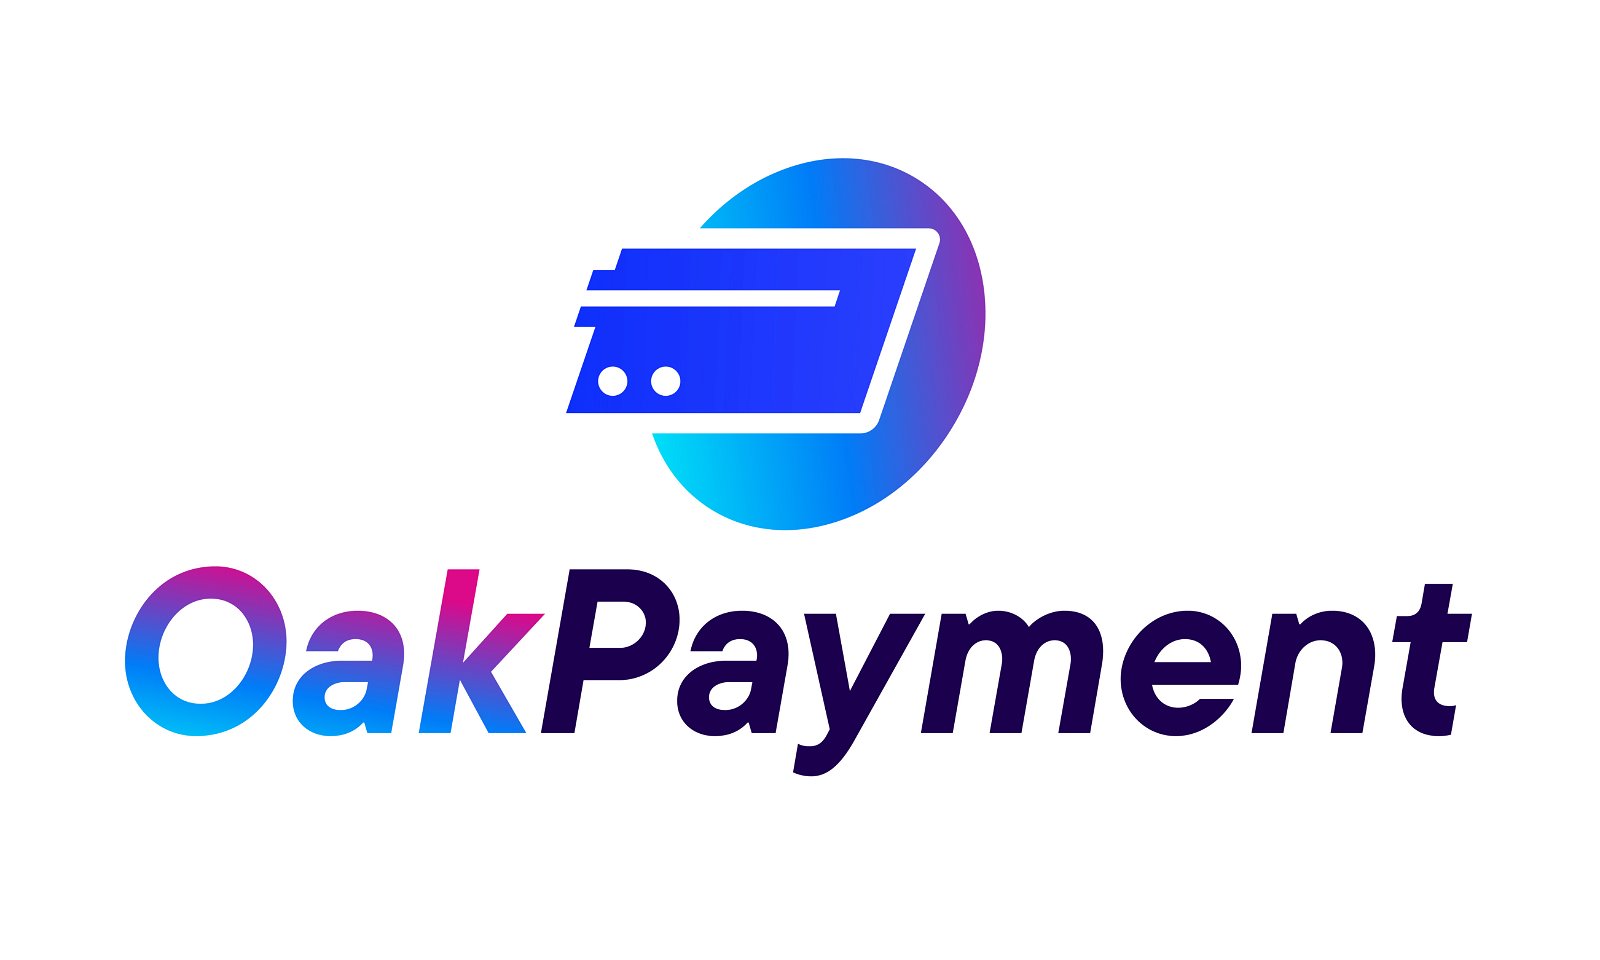 OakPayment.com - Creative brandable domain for sale